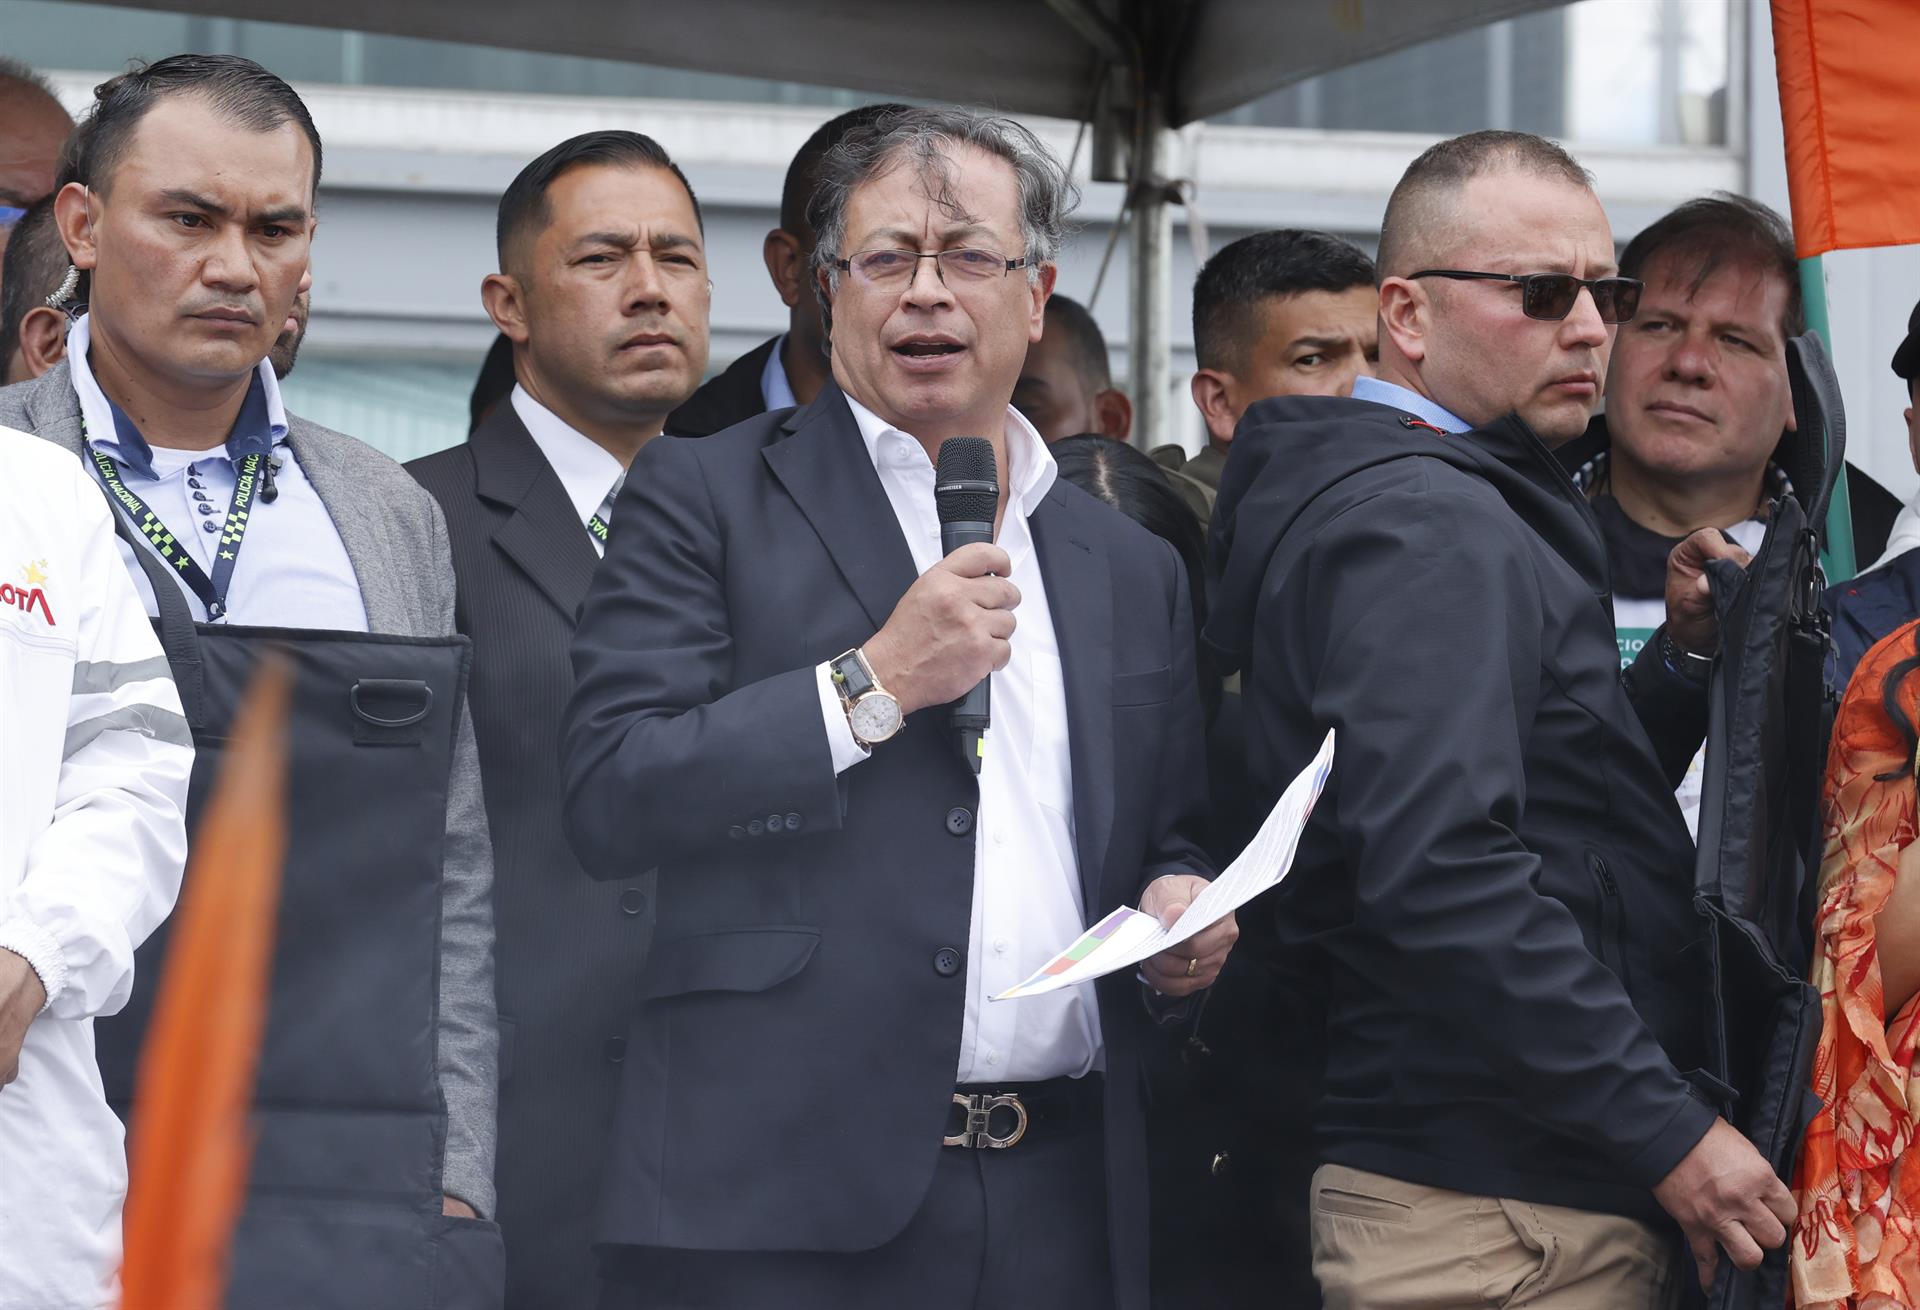 Presidentes llegan a Colombia para toma de posesión de Petro